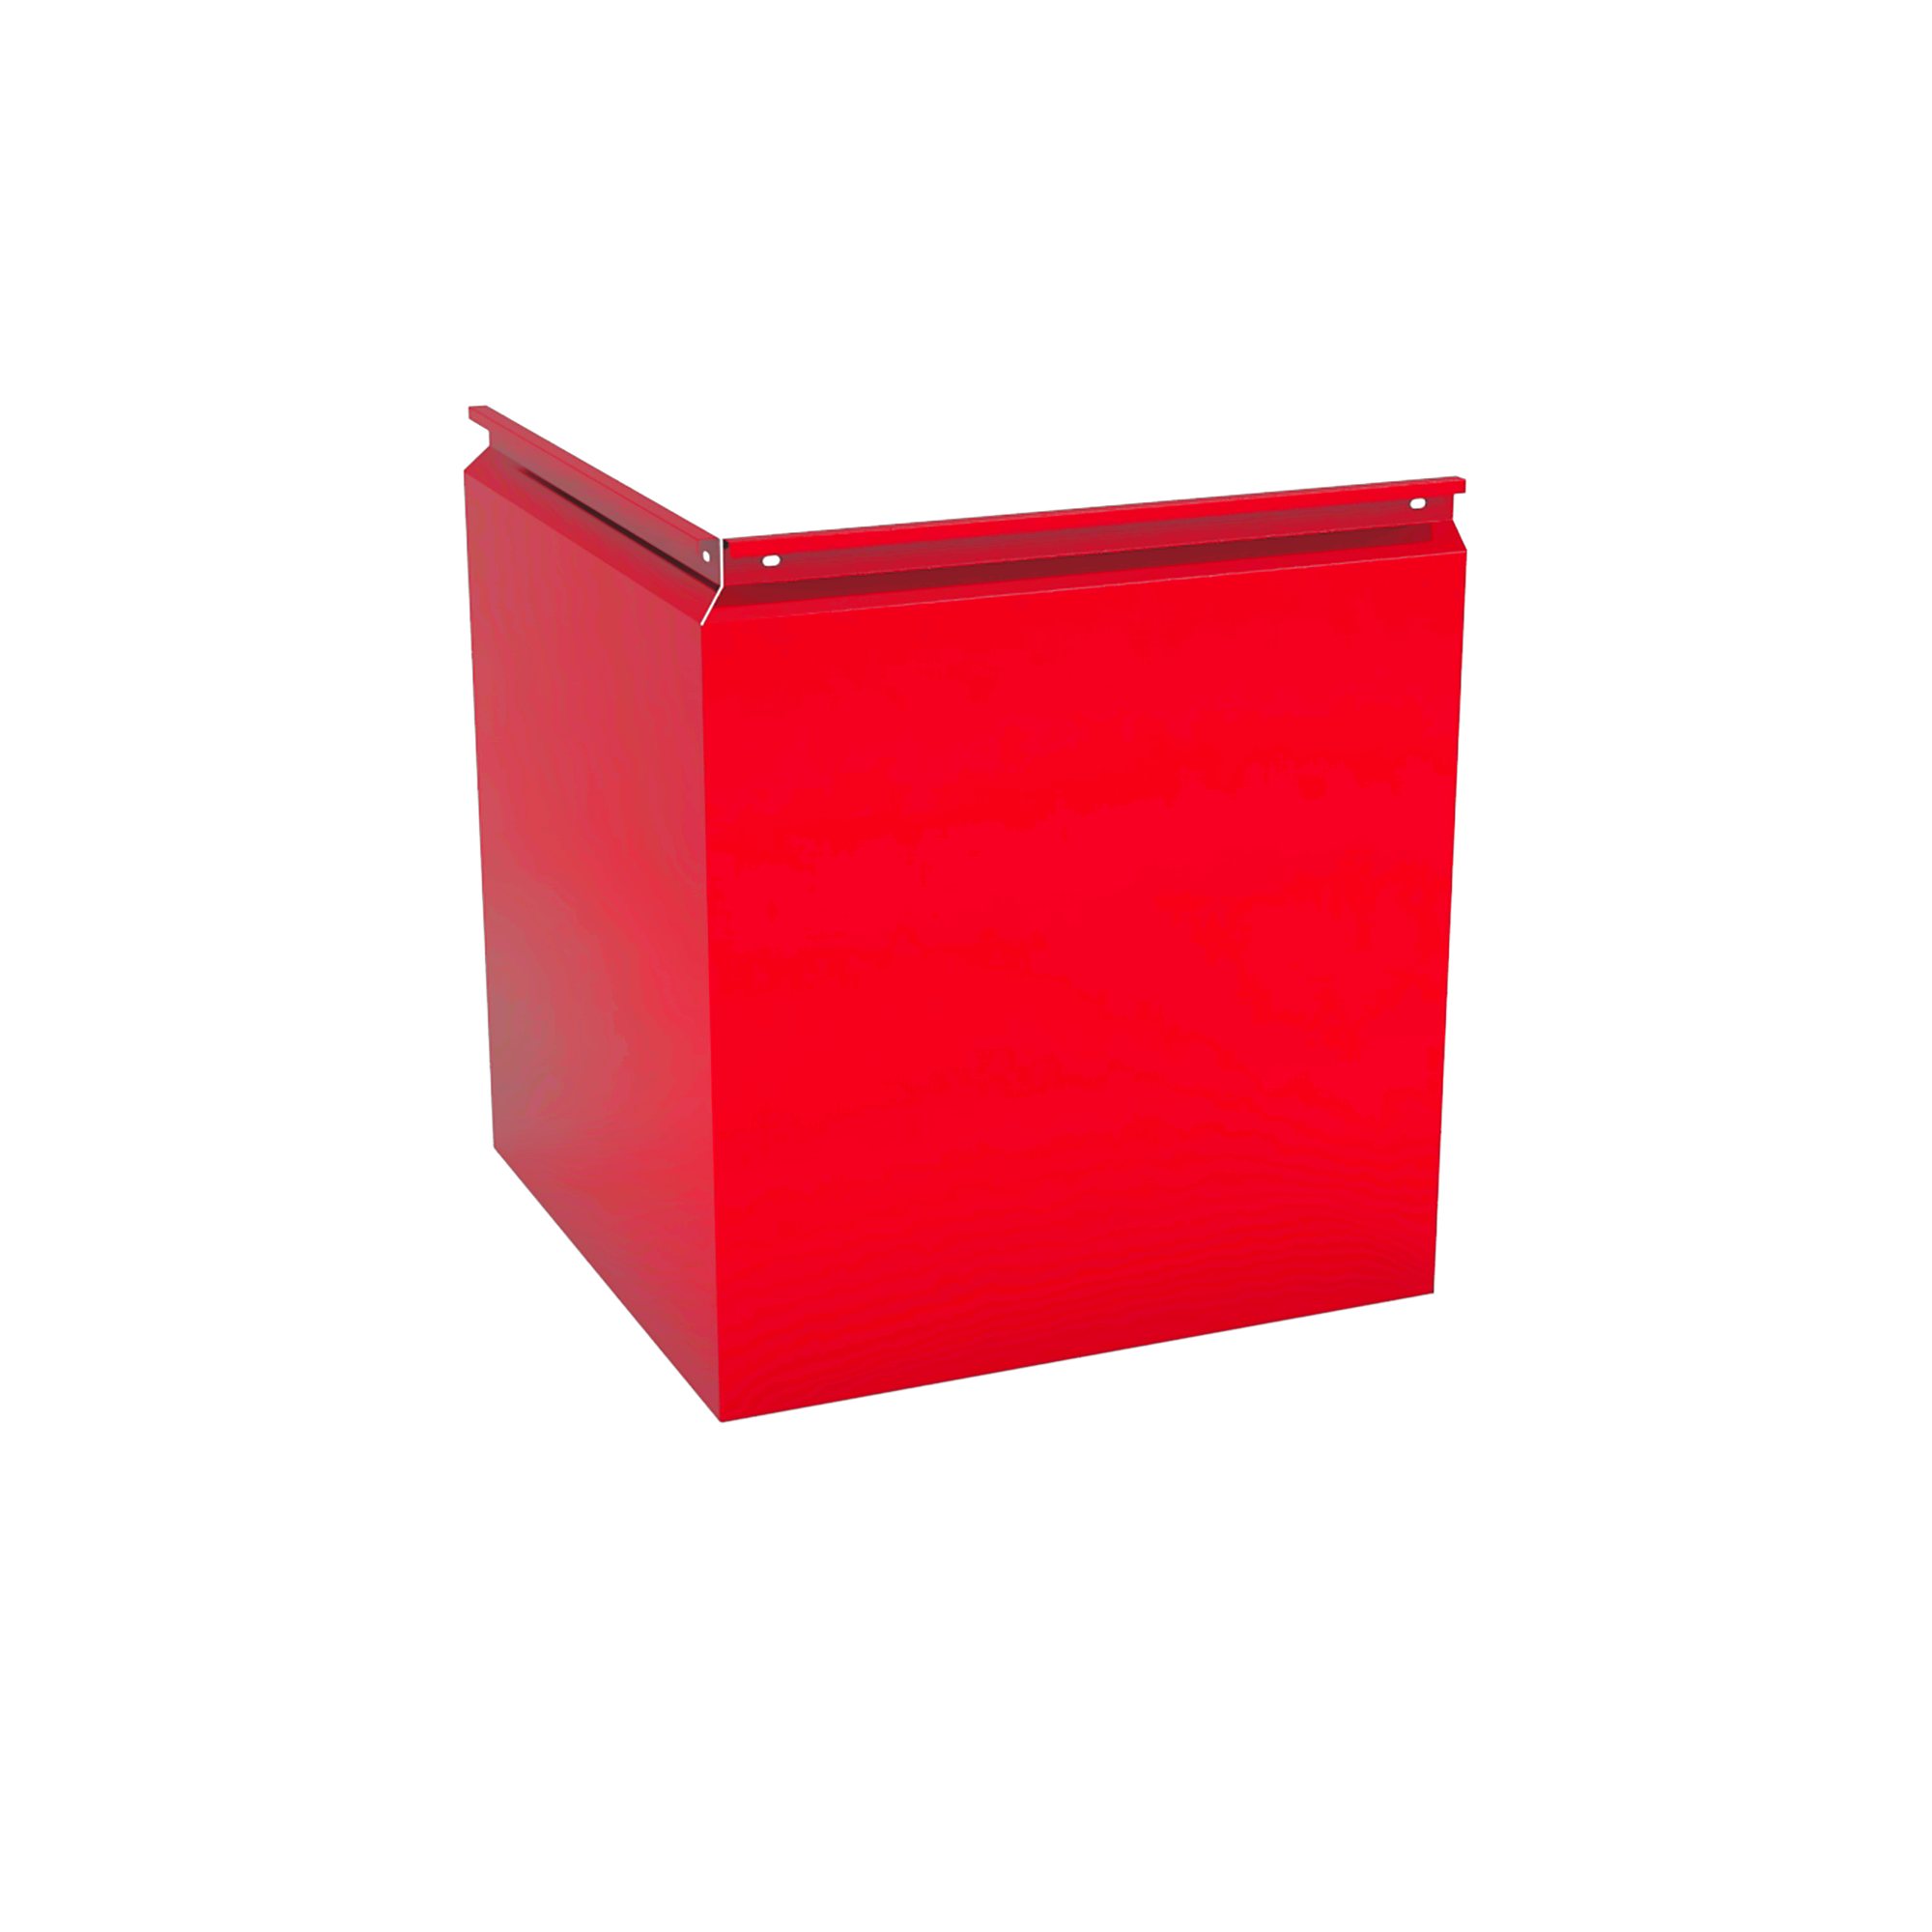 Фасадная кассета Угловая 340 Транспортный красный 1,2 мм Фасадные кассеты Кровля Сервис